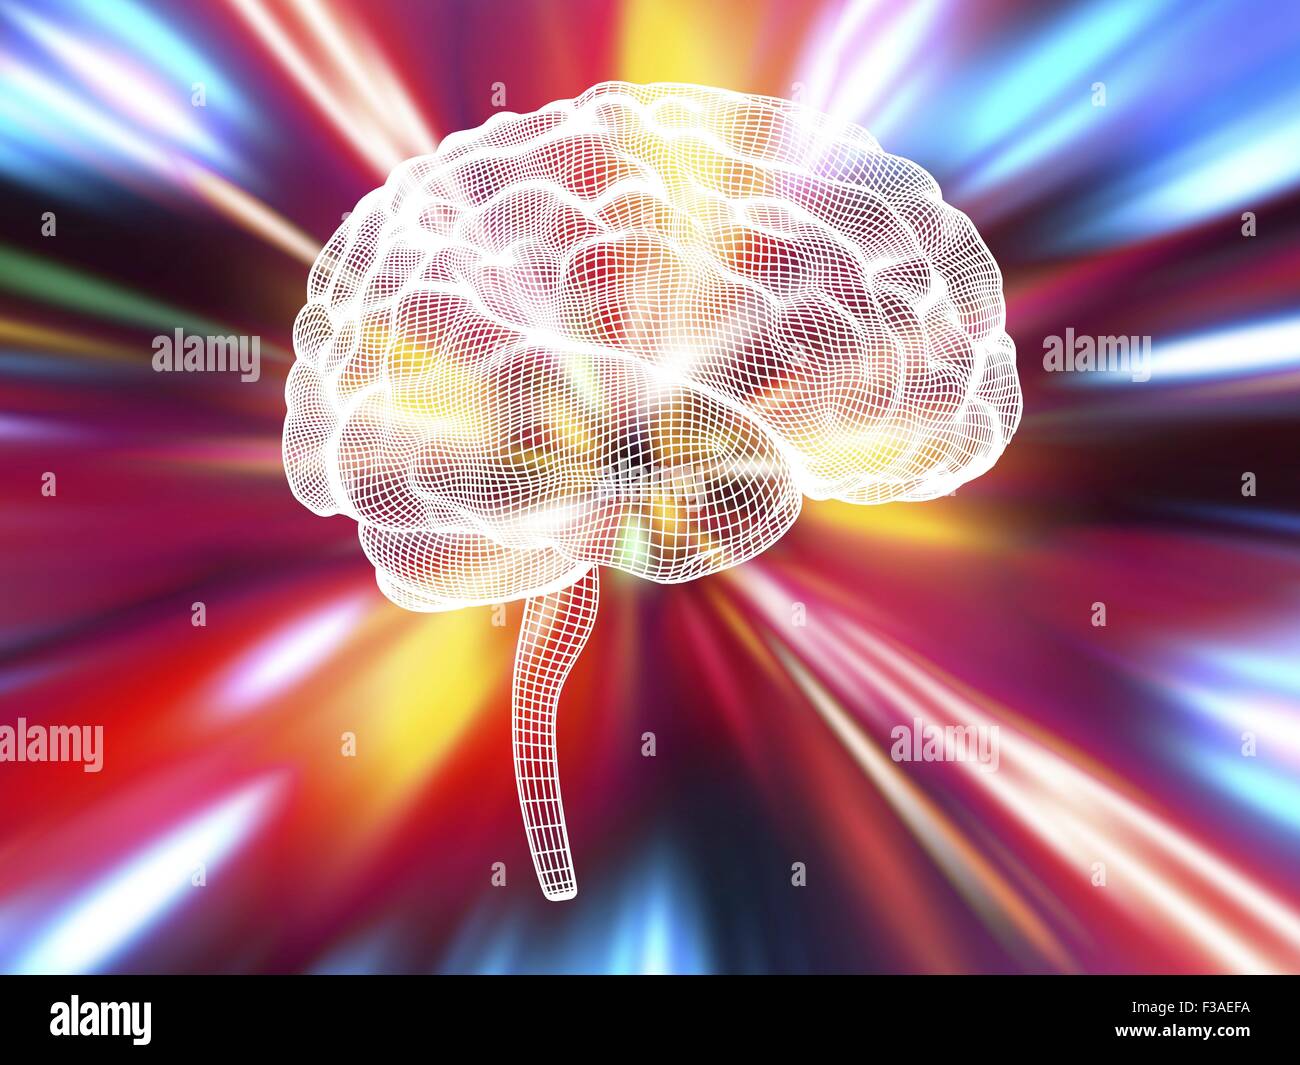 Computer illustrazione del cervello umano. Rappresentazione a wireframe visto dal lato, con sfondo colorato. Foto Stock